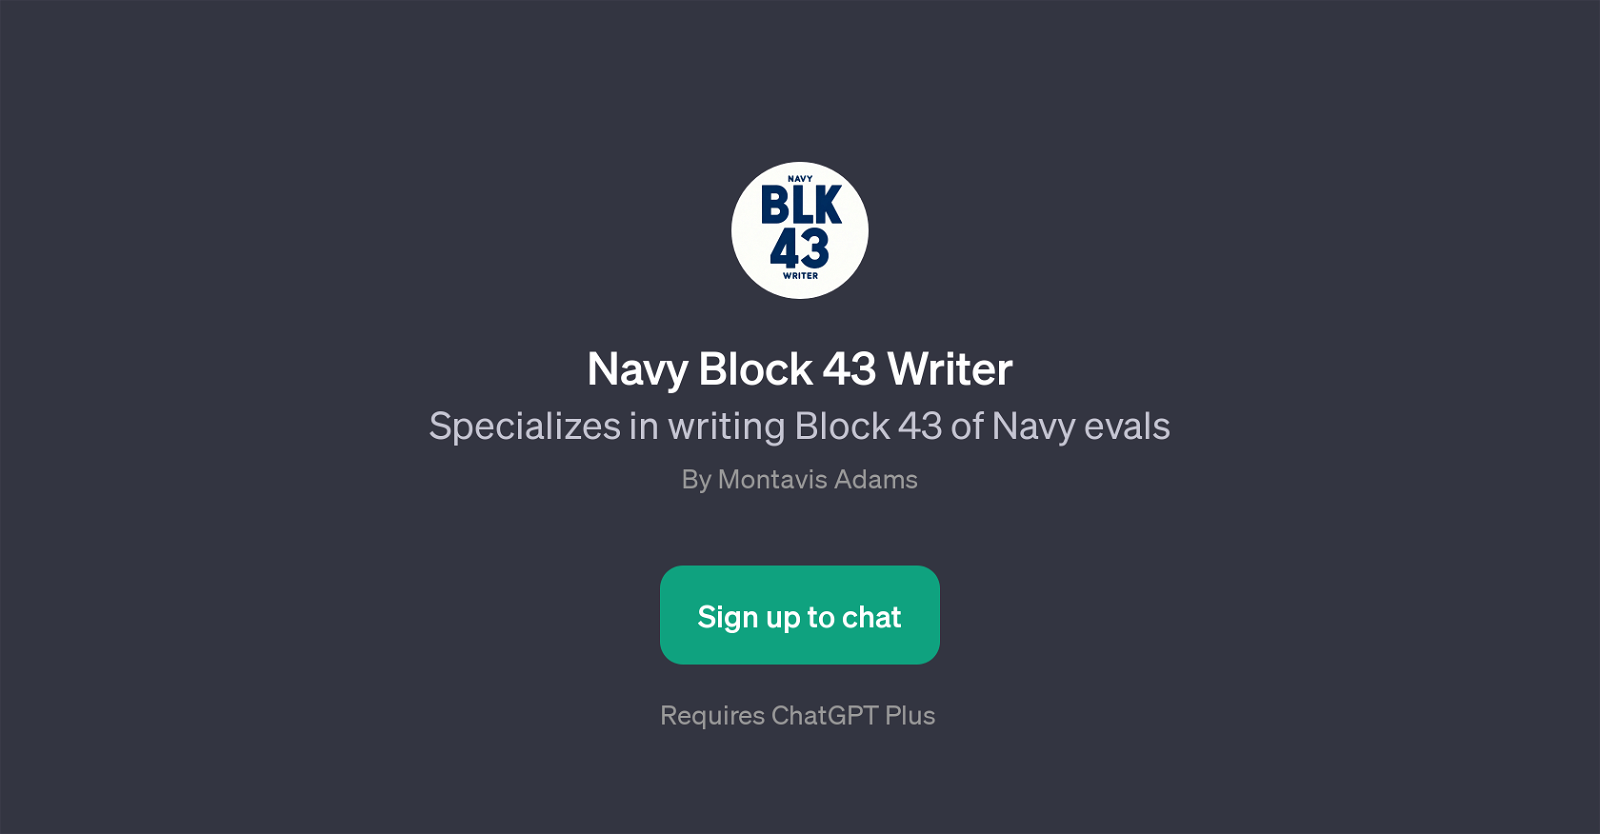 Navy Block 43 Writer website